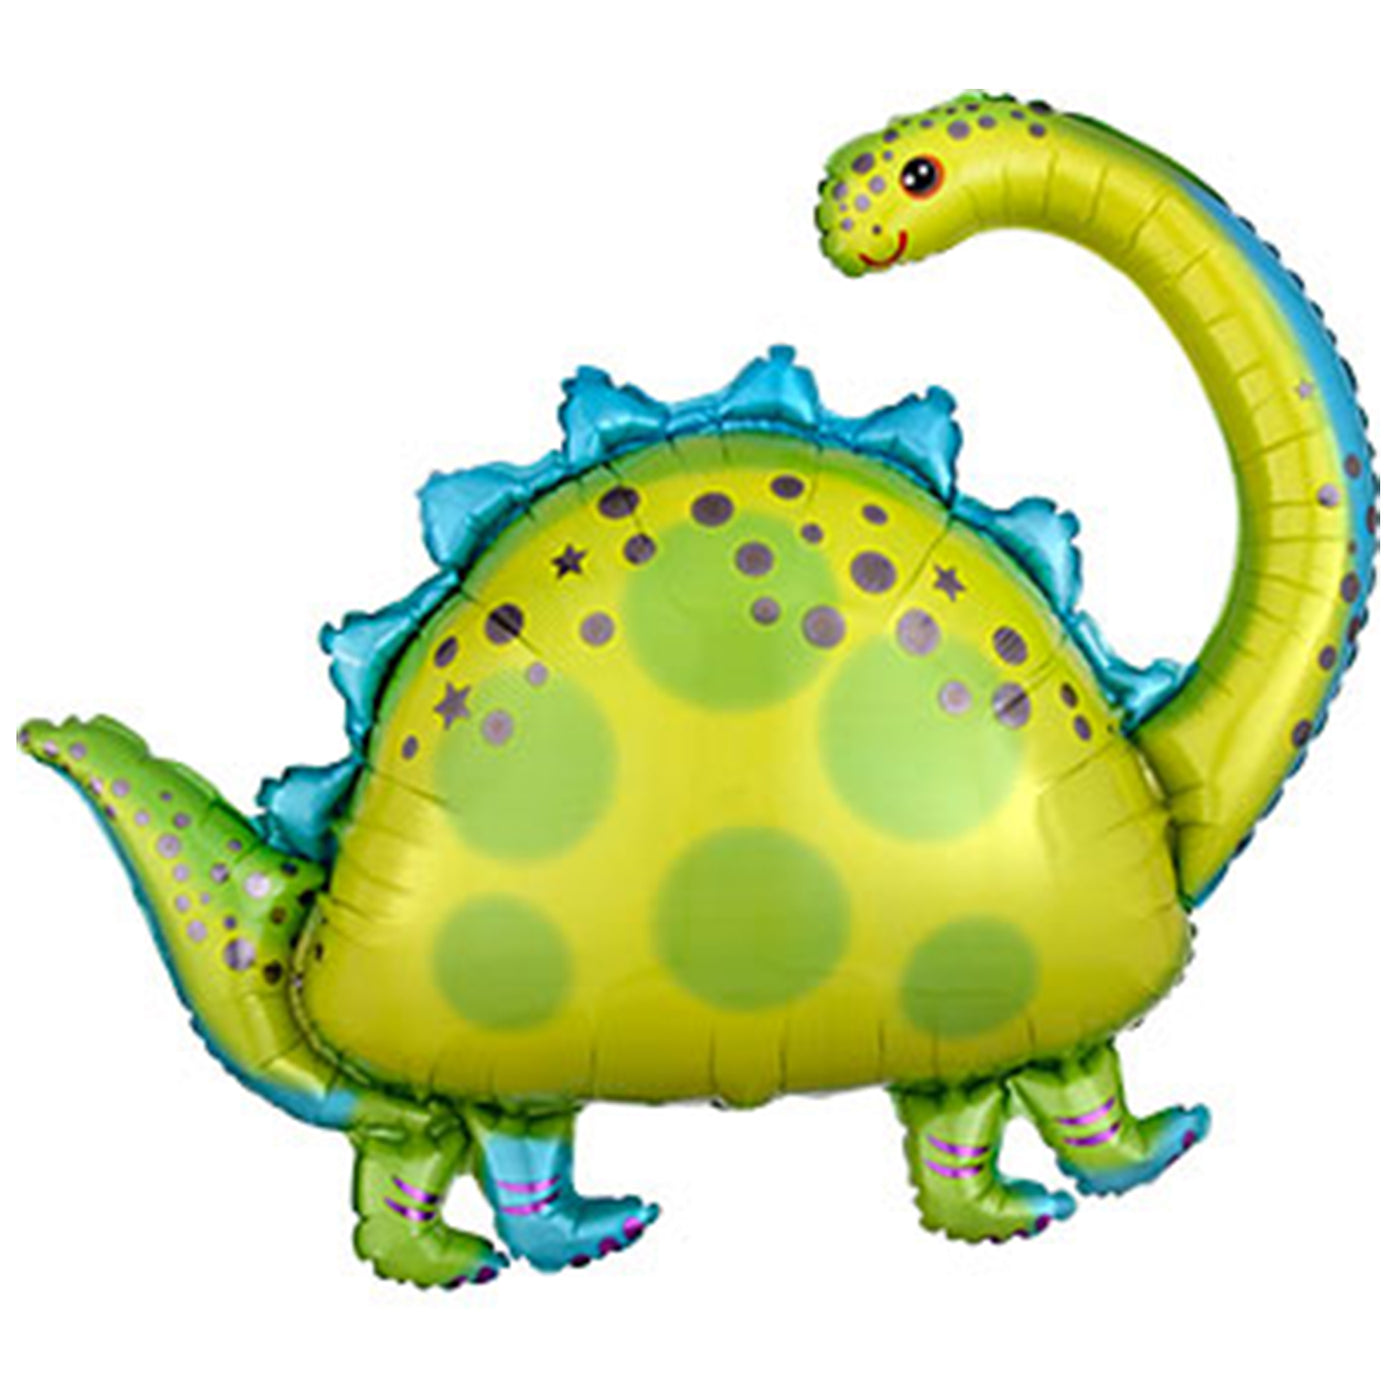 Stegosaurus Balloon